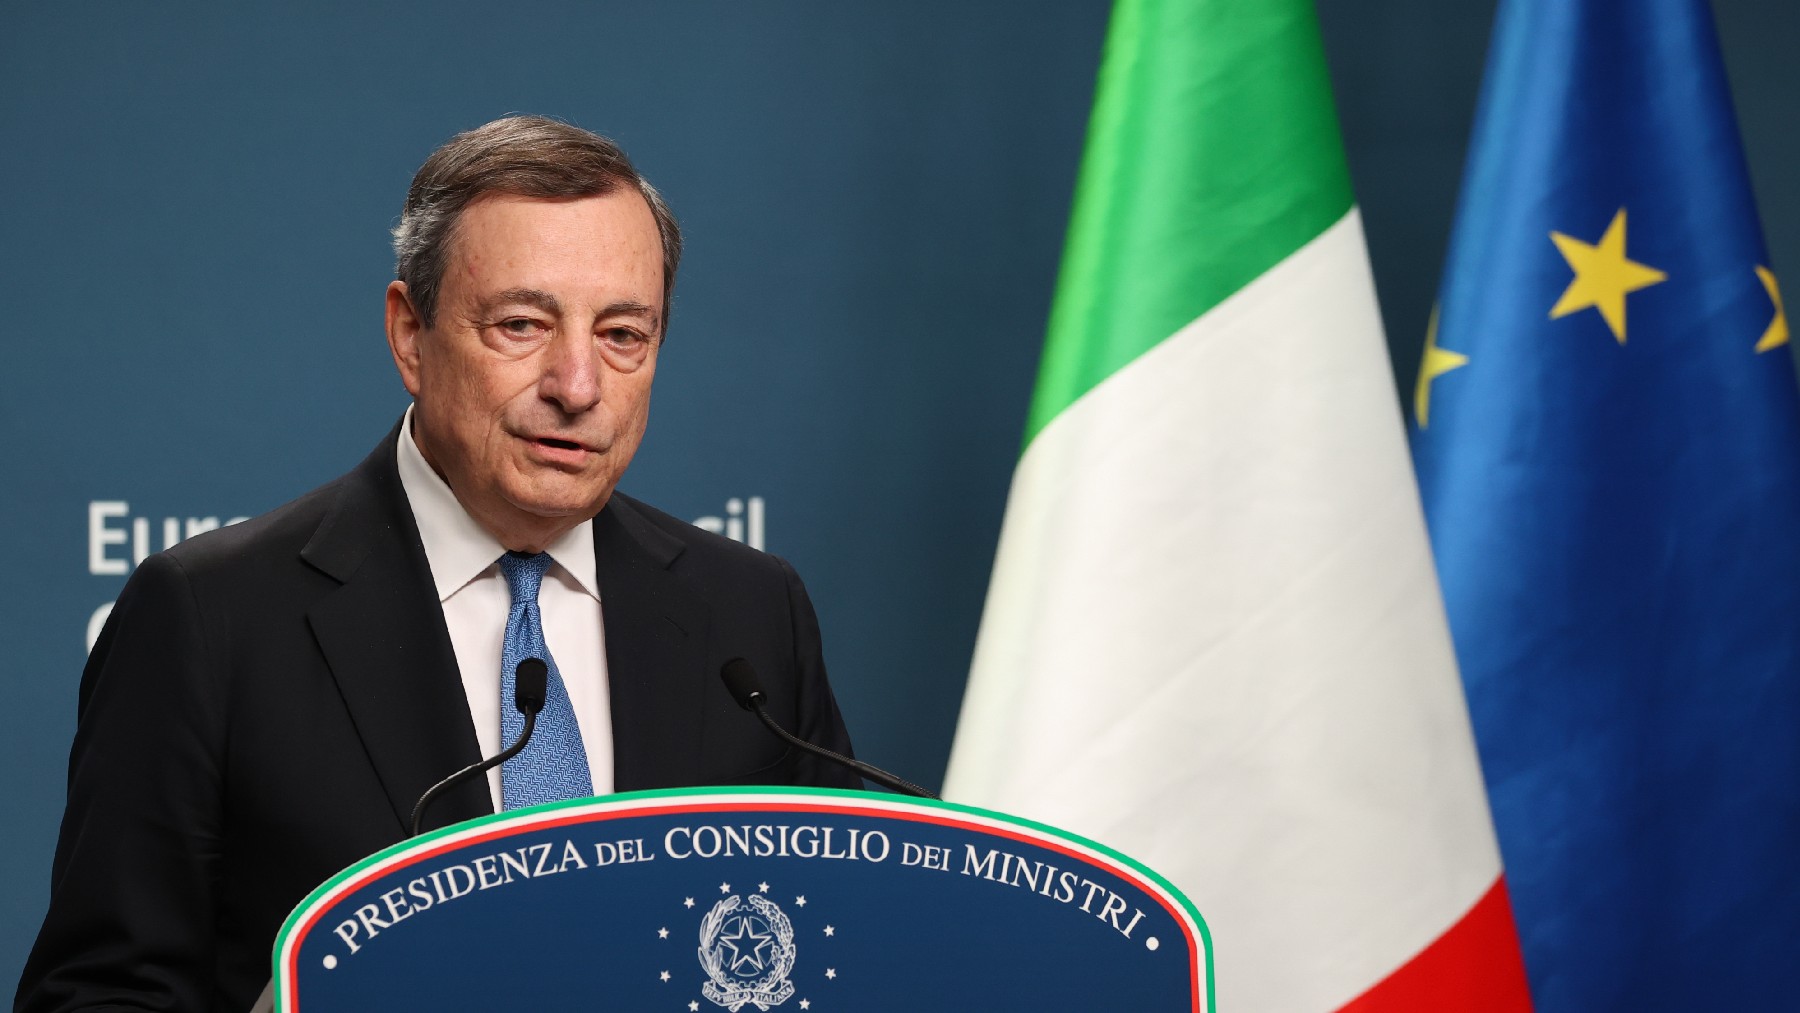 Mario Draghi, primer ministro de Italia.